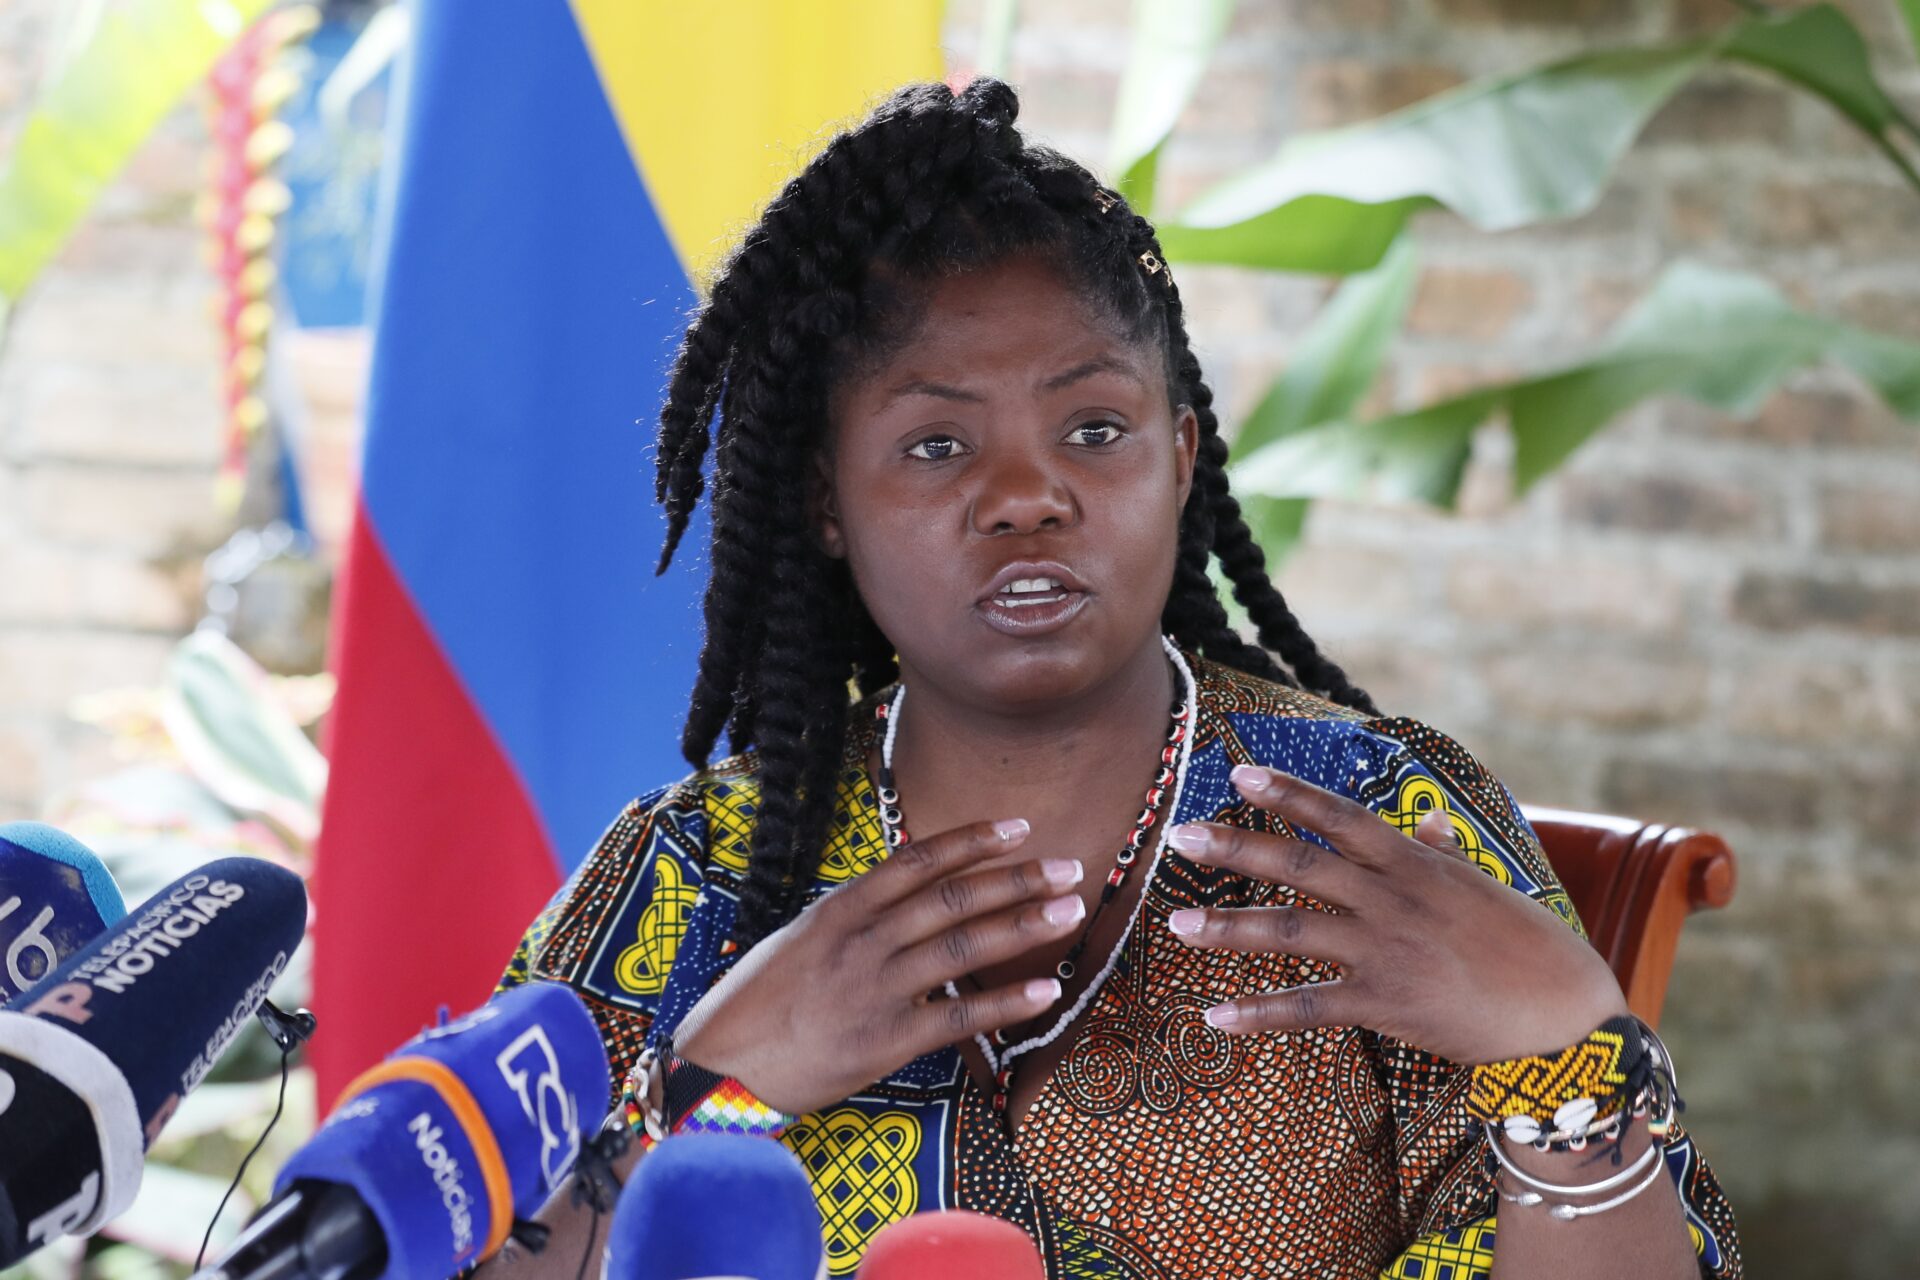 La mujer que llamó ‘simio’ a la vicepresidenta de Colombia recibirá condena